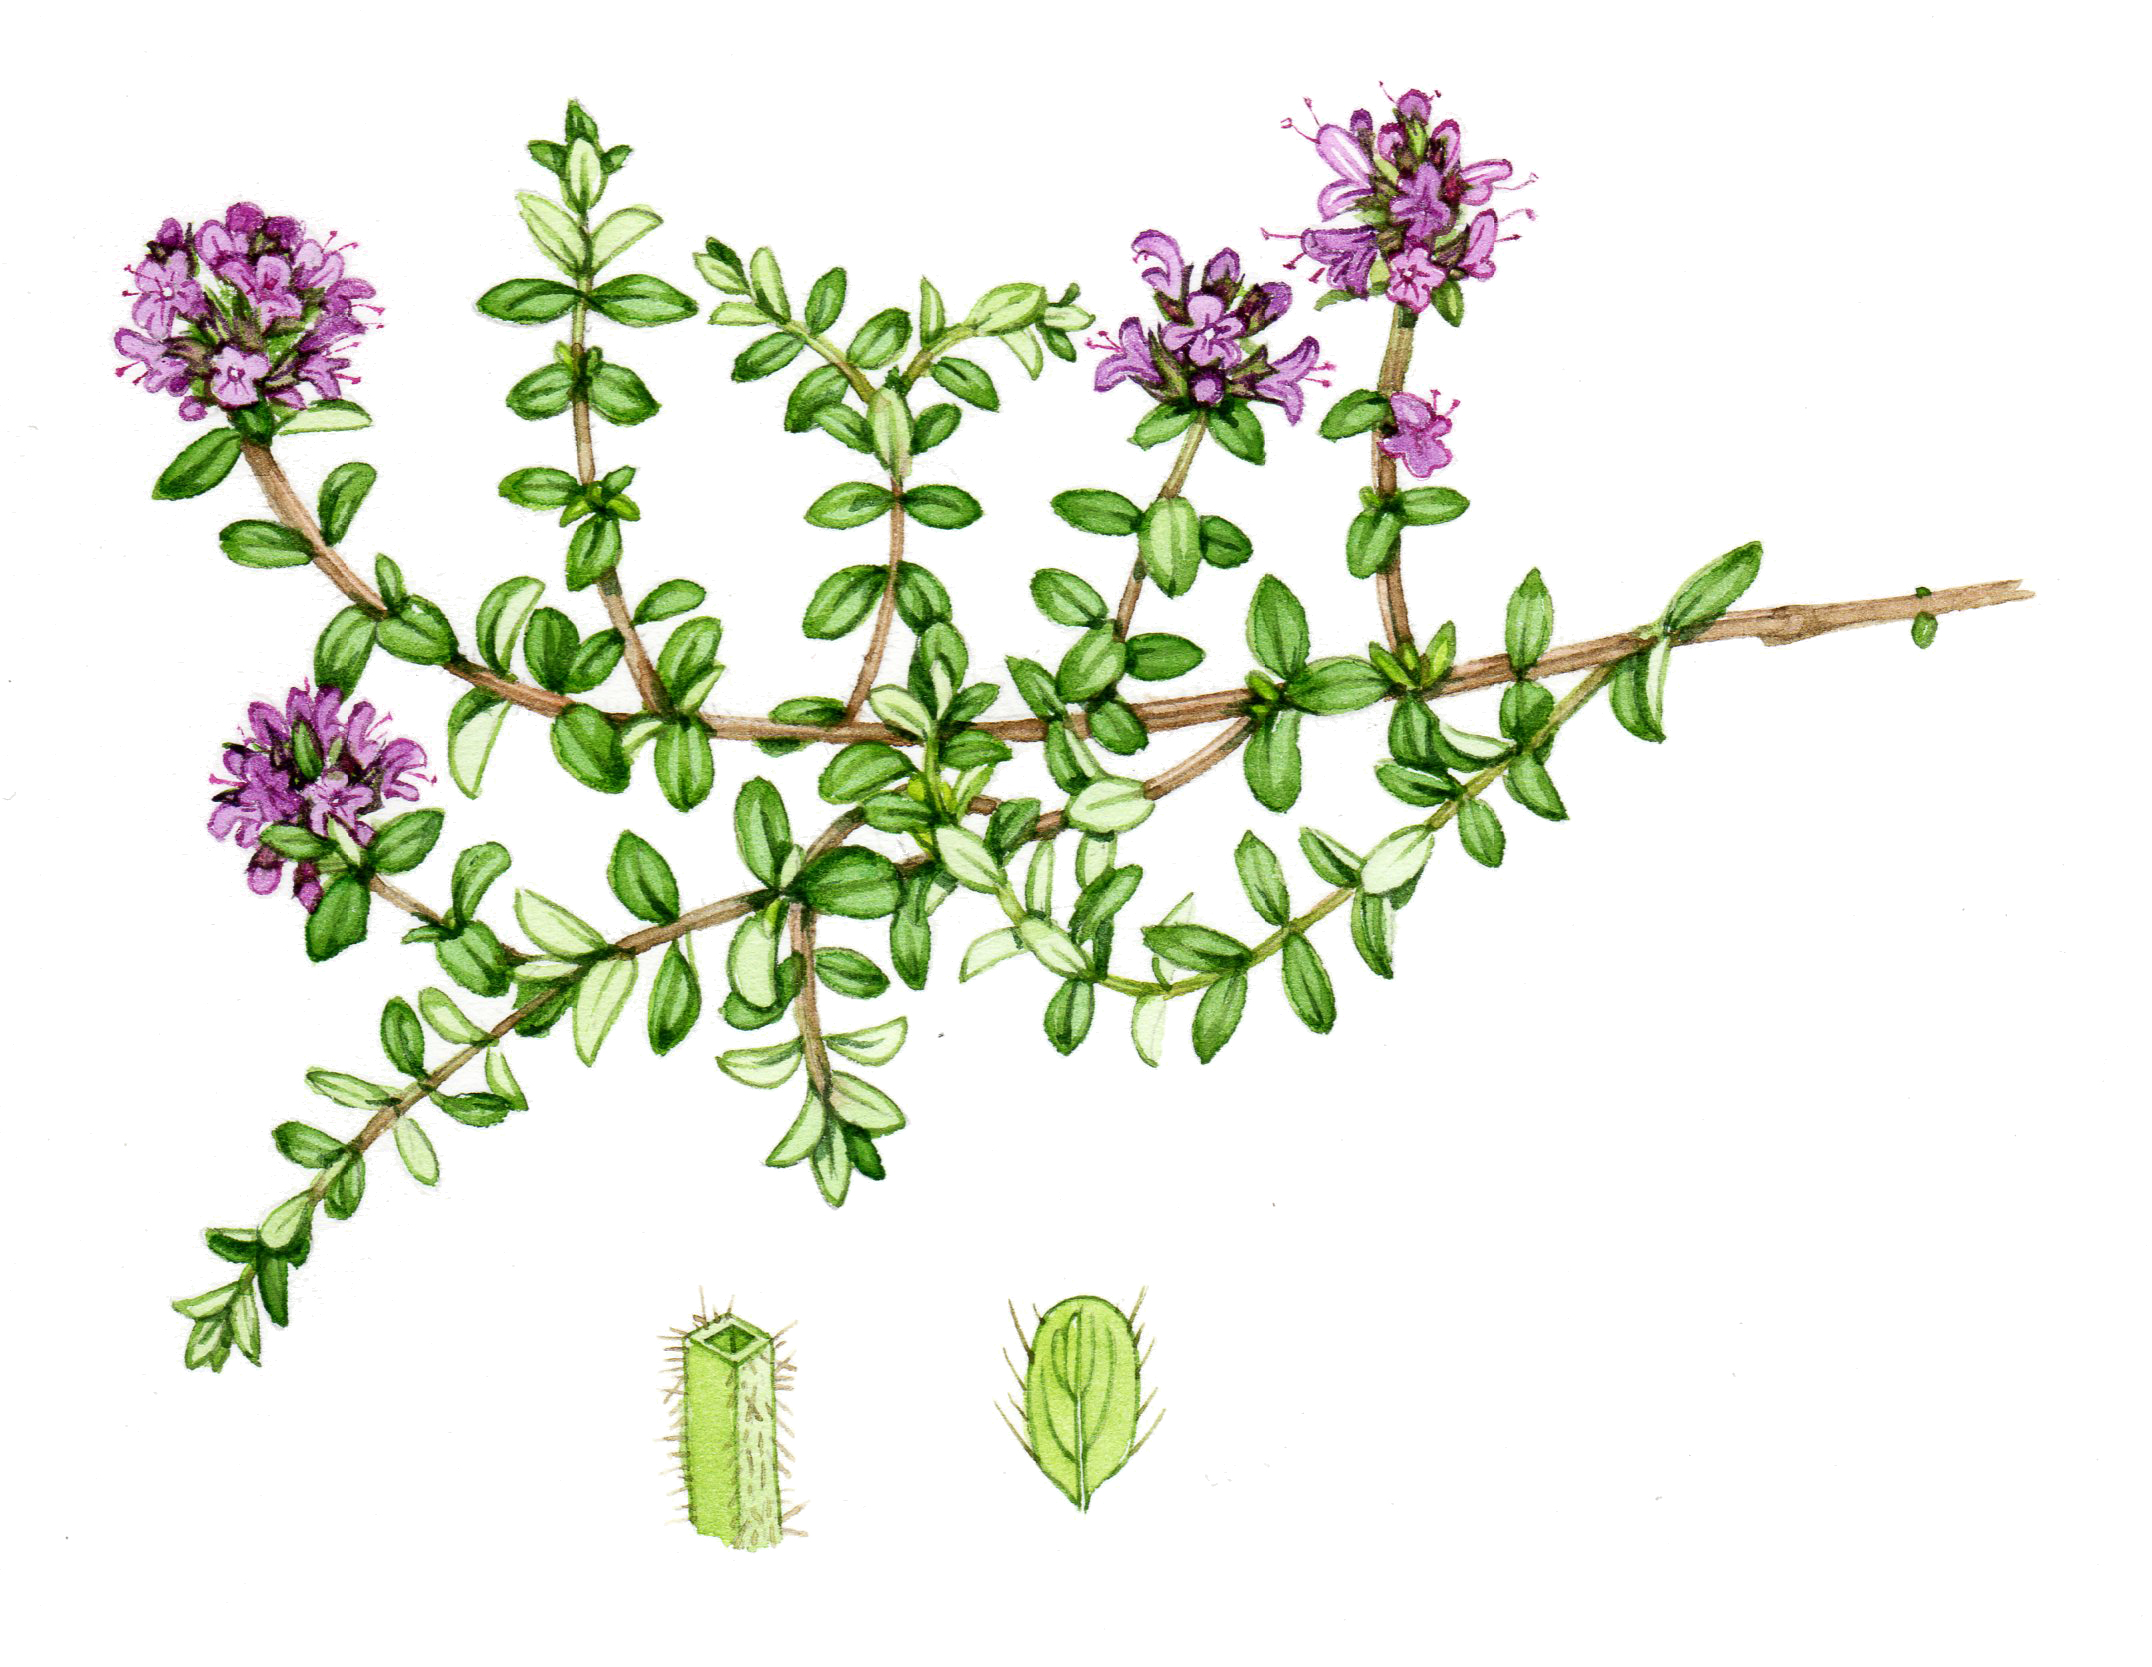 Wild thyme Thymus praecox natural history illustration by Lizzie Harper